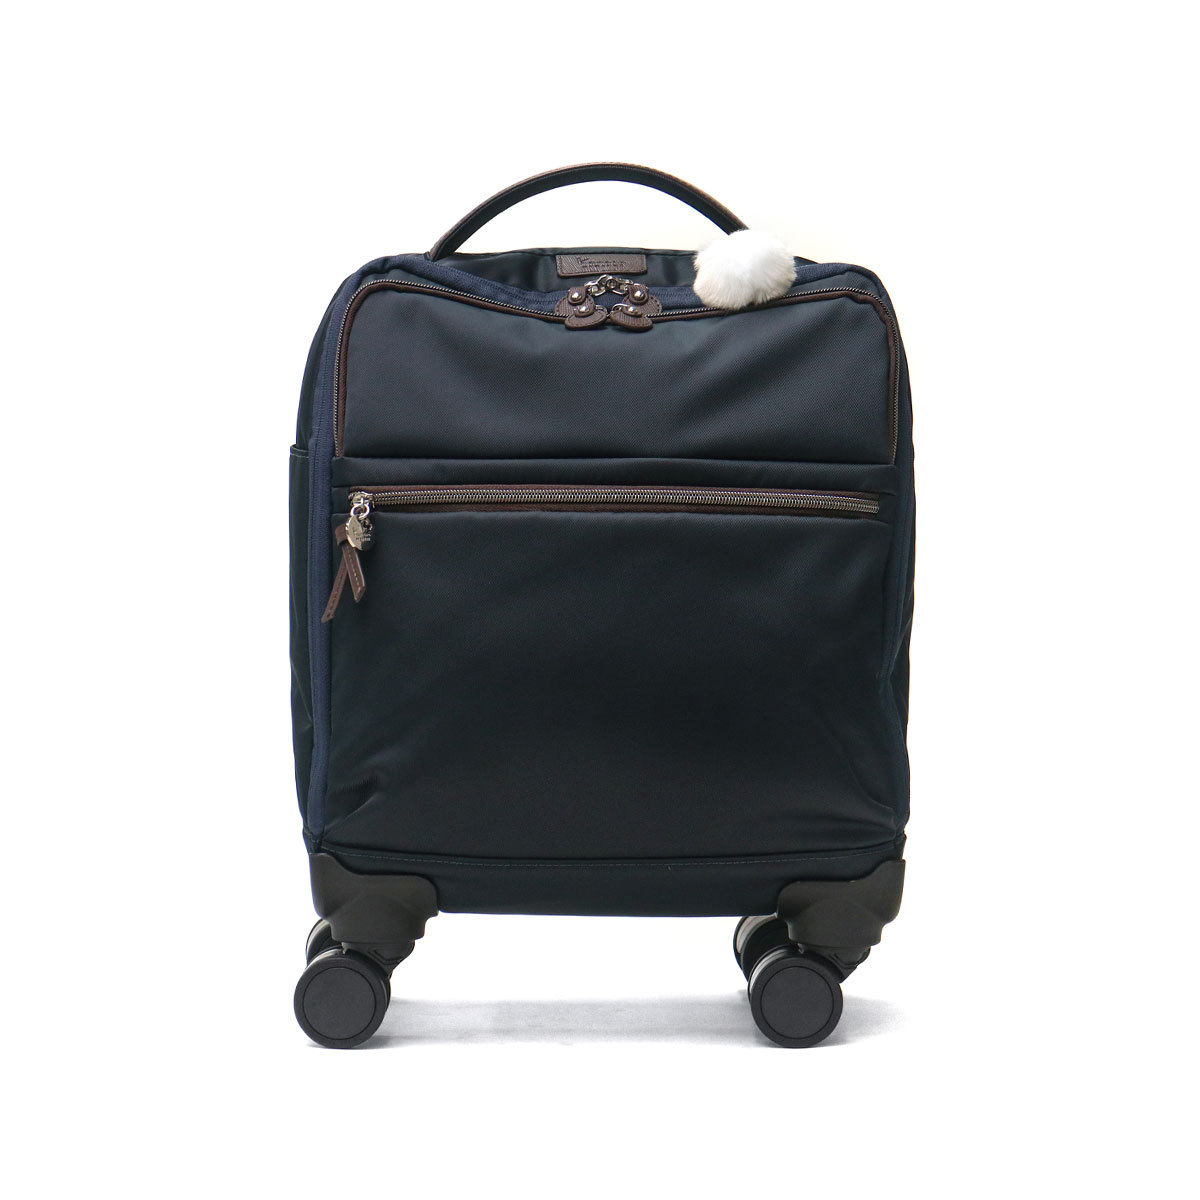 カナナプロジェクト スーツケース Kanana project トローリーバッグ